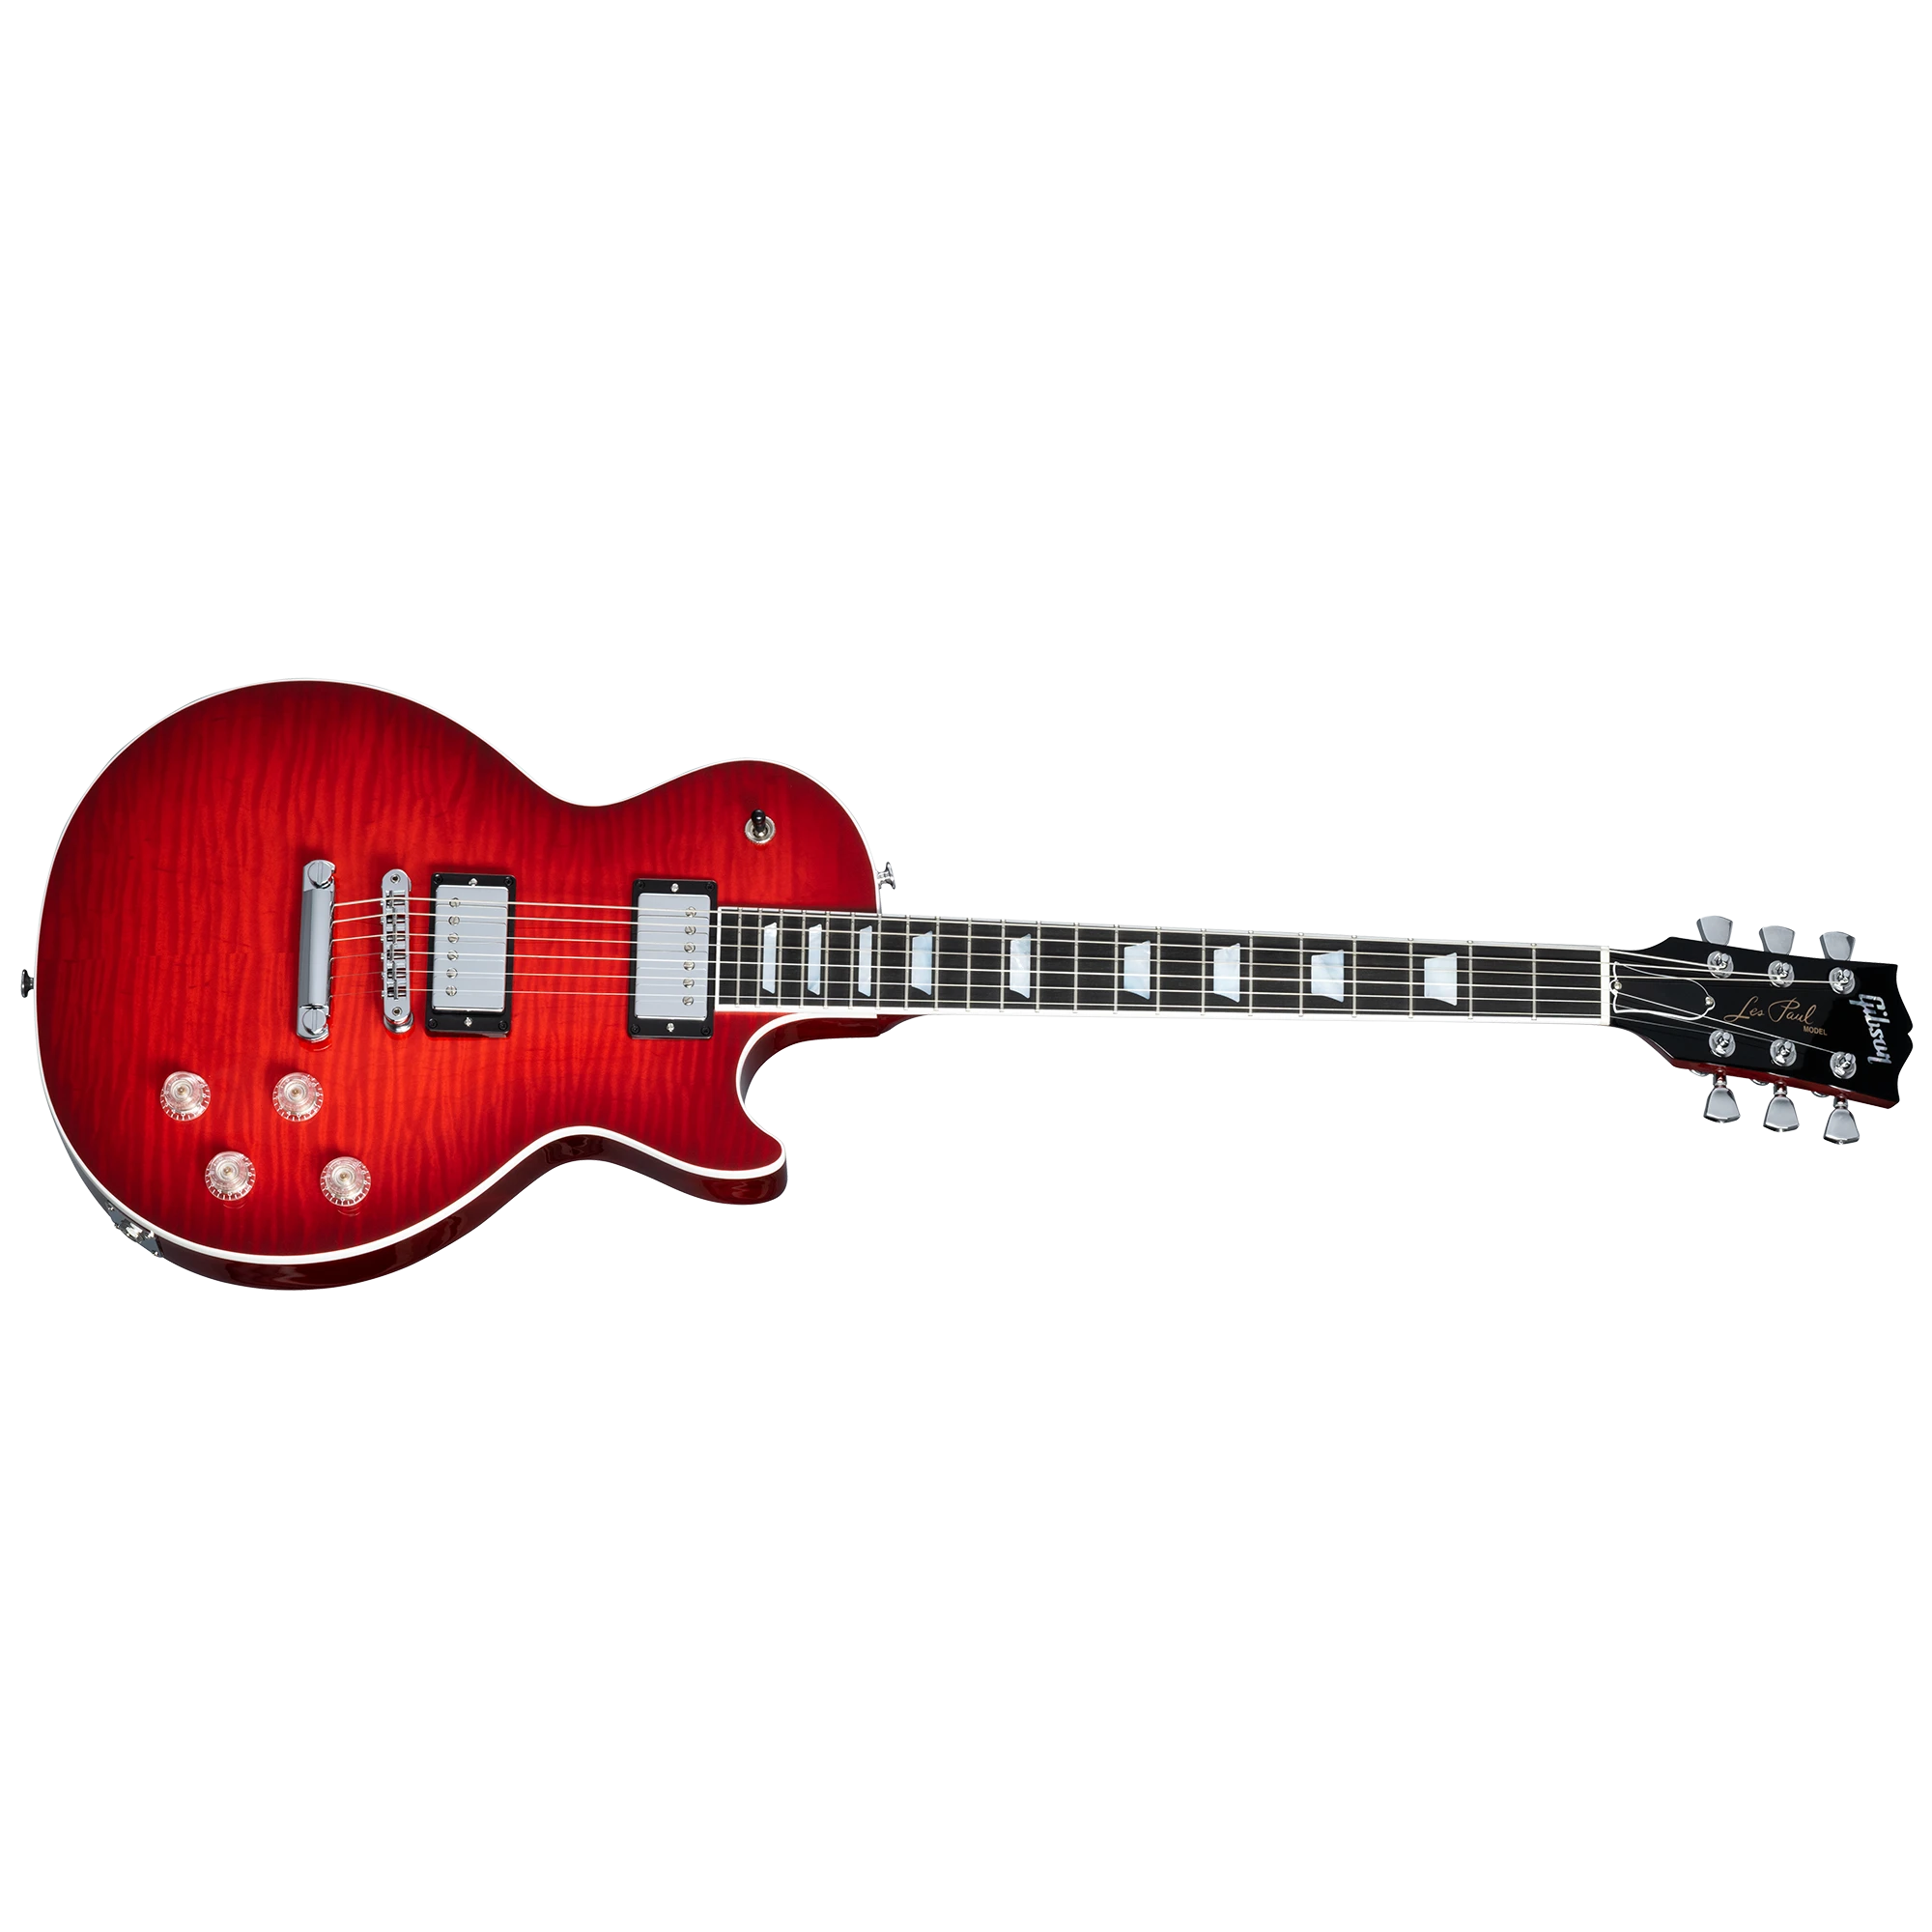 Gibson Les Paul Modern Figured - Cherry Burst